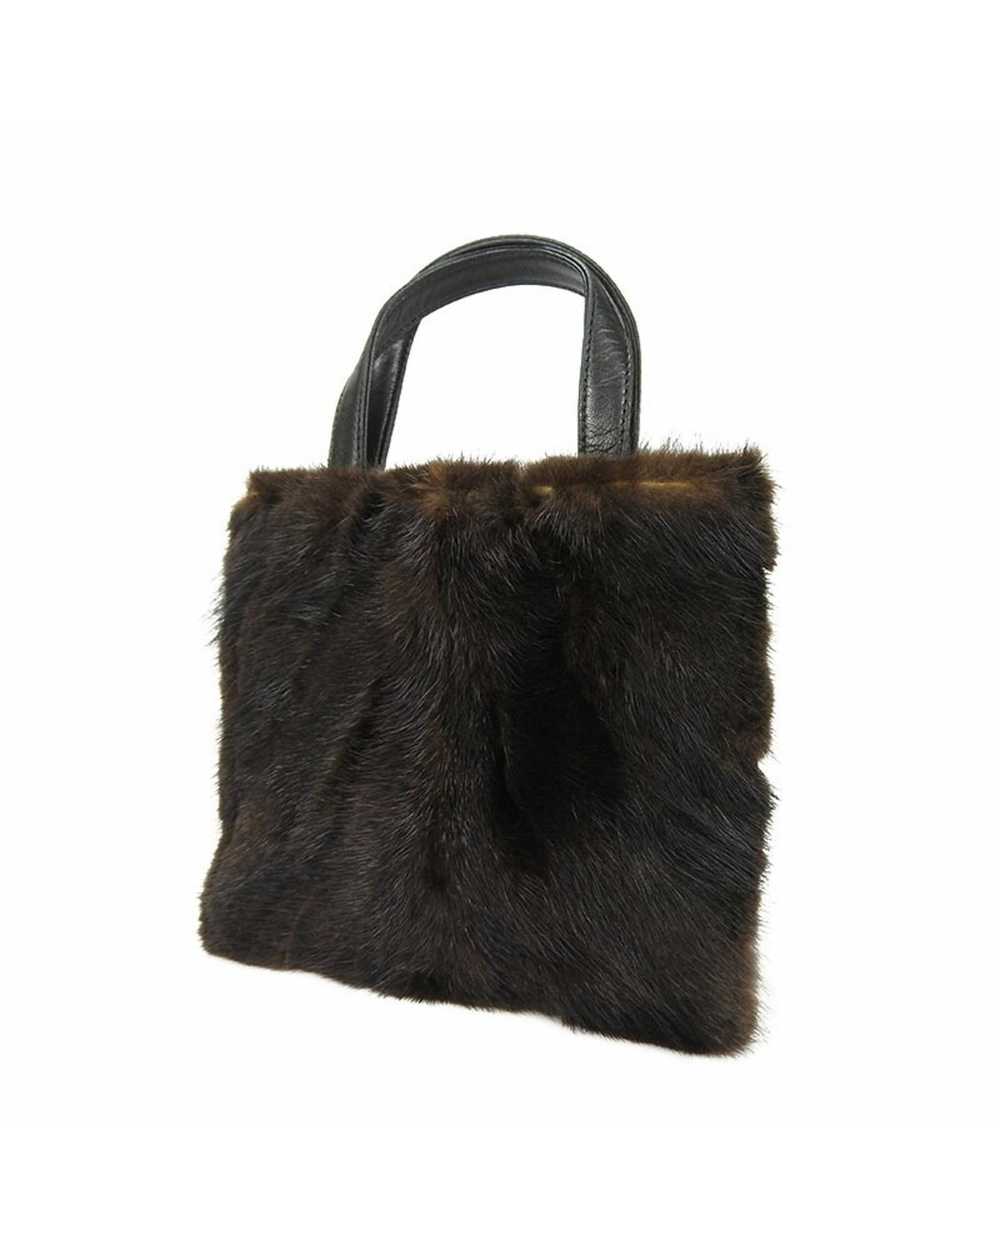 Loewe Mink Fur Nappa Leather Handbag - image 2